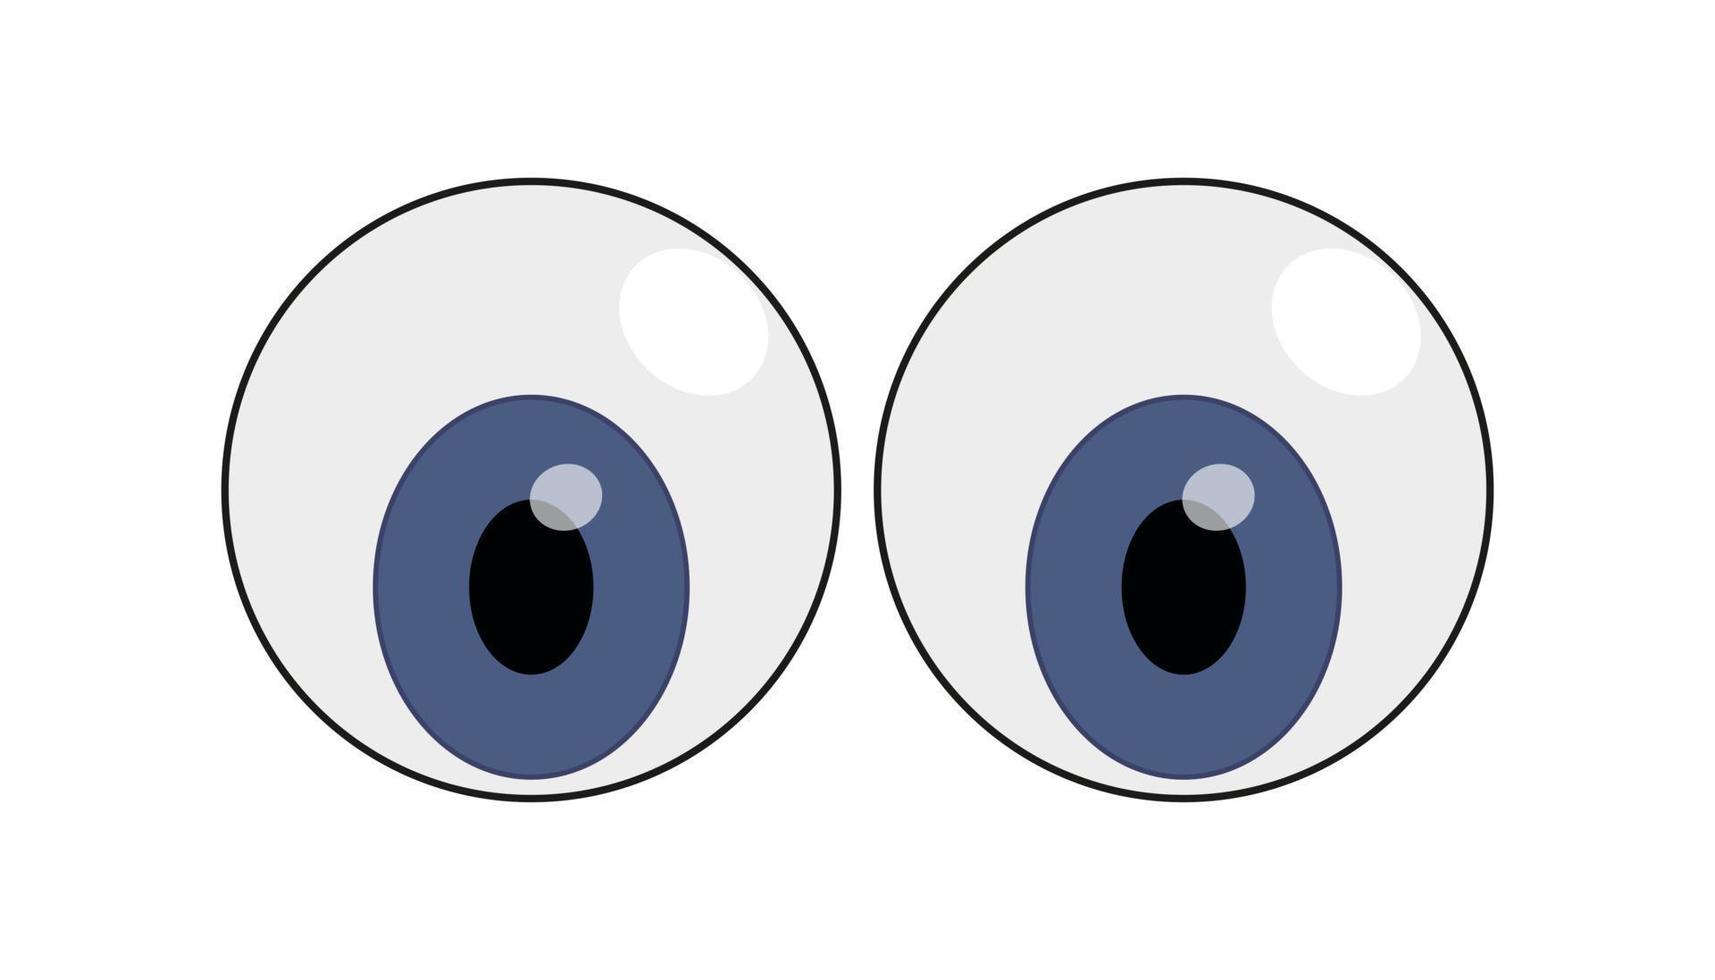 juguete de ojos de plástico en estilo de dibujos animados vector